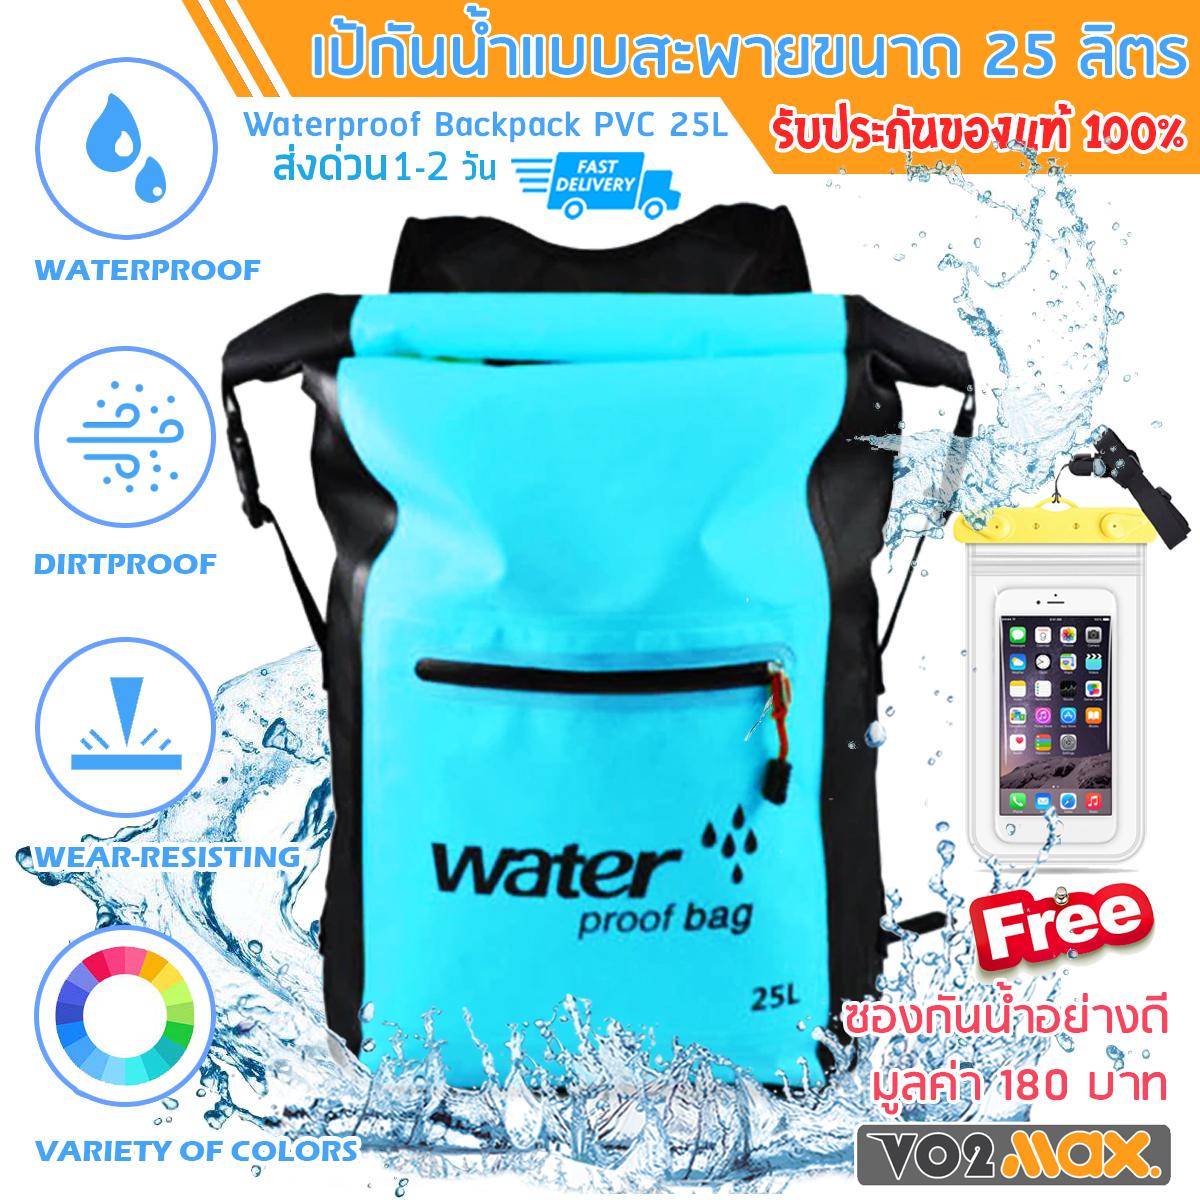 VO2max กระเป๋ากันน้ำ แบบสะพายหลัง ถุงกันน้ำ ถุงทะเล PVC Waterproof Backpack ความจุ 25 ลิตร แถมฟรี!!! ซองกันน้ำมือถืออย่างดี มูลค่า 180 บาท